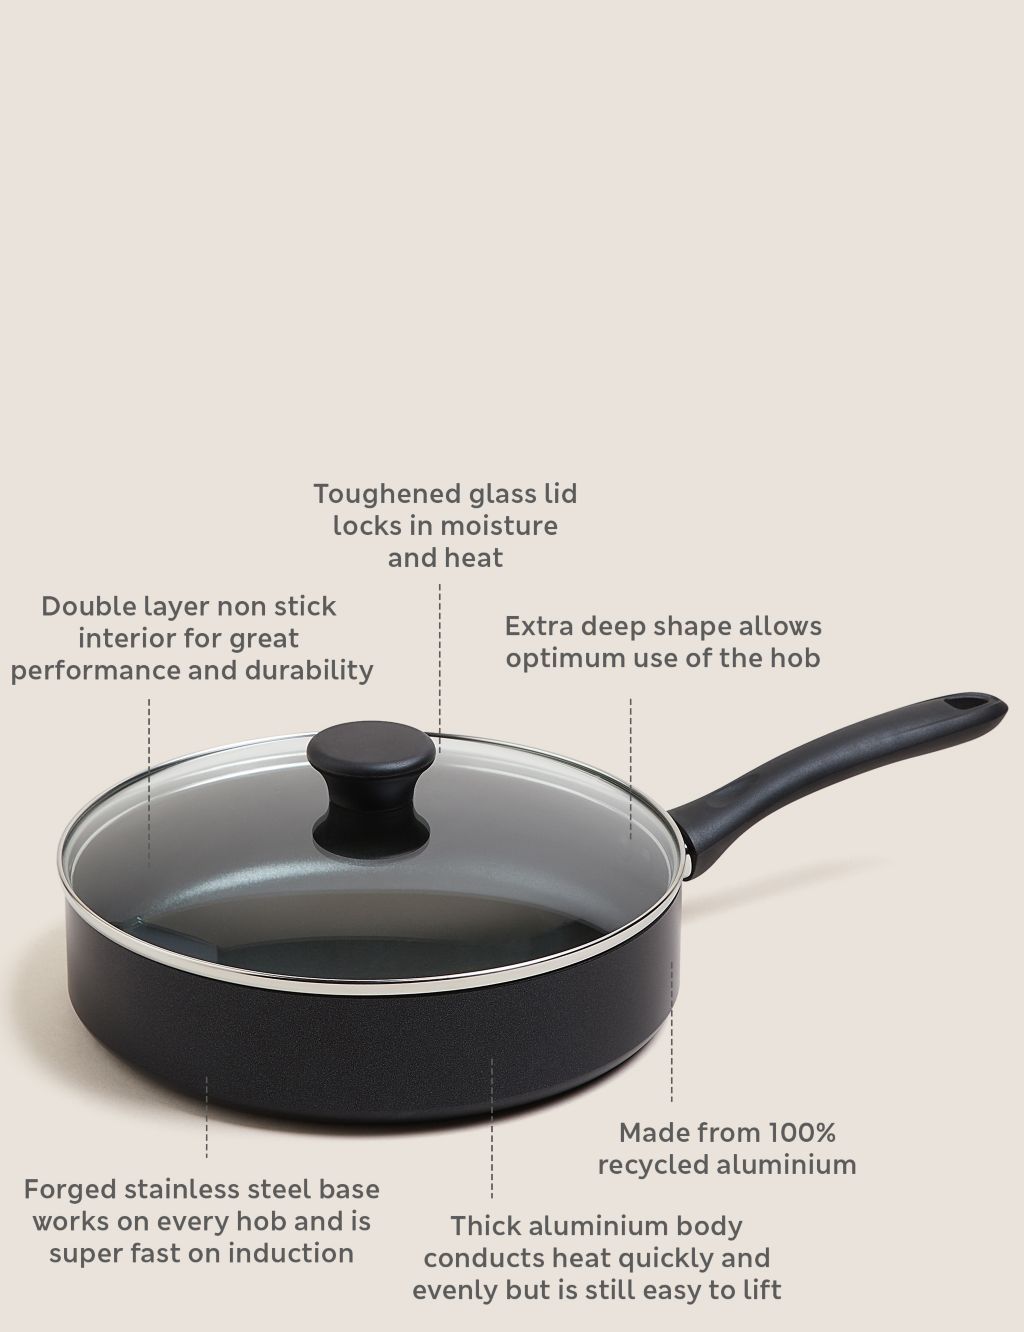 Large Saucepan 4.5L 24cm Large Non-Stick Cooking Pot with Glass Lid  Aluminum